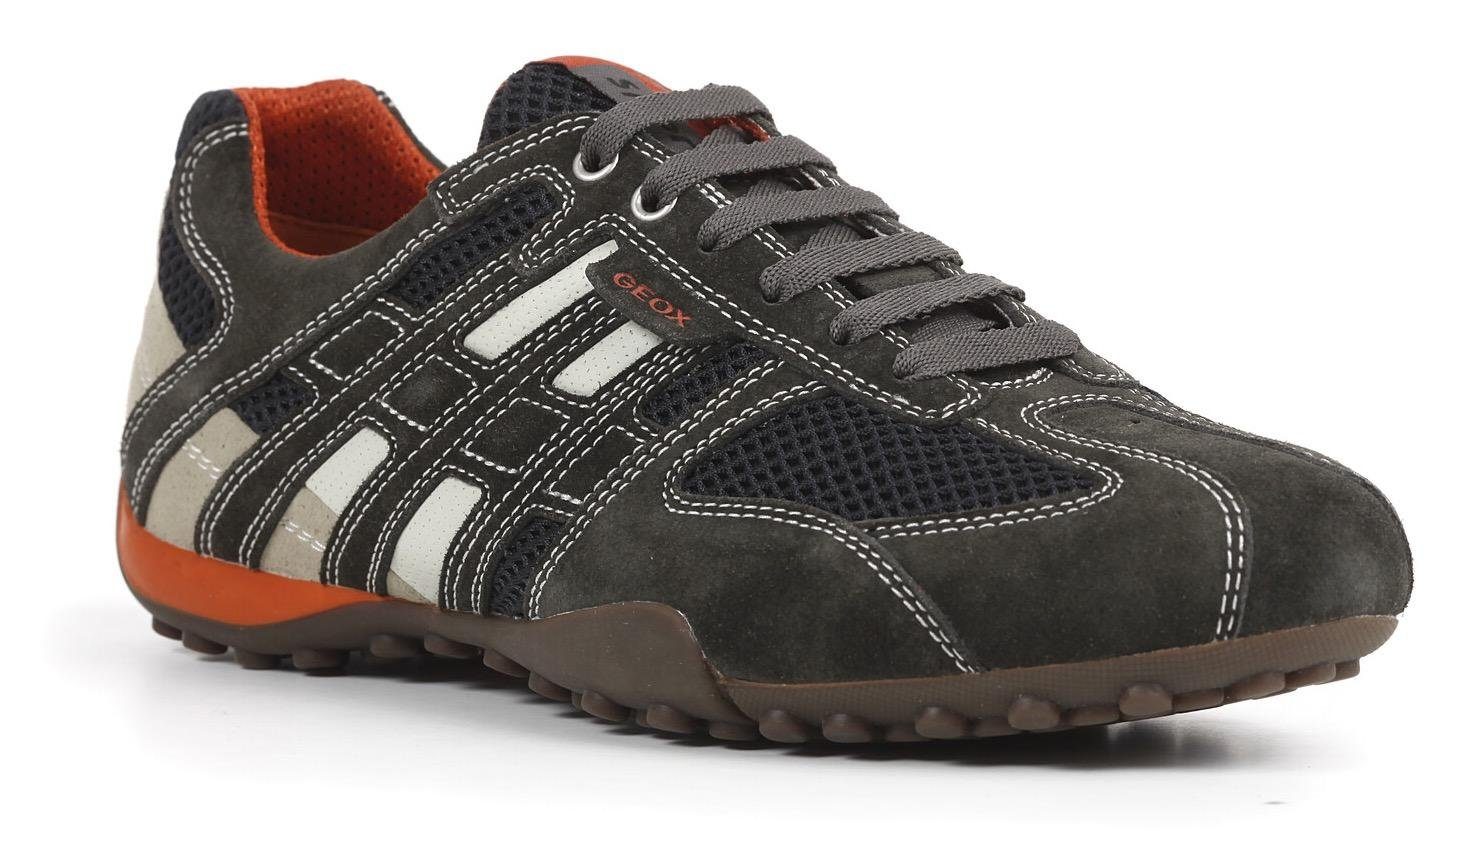 Günstige Geox Schuhe Herren » Geox Schuhmode online kaufen | OTTO